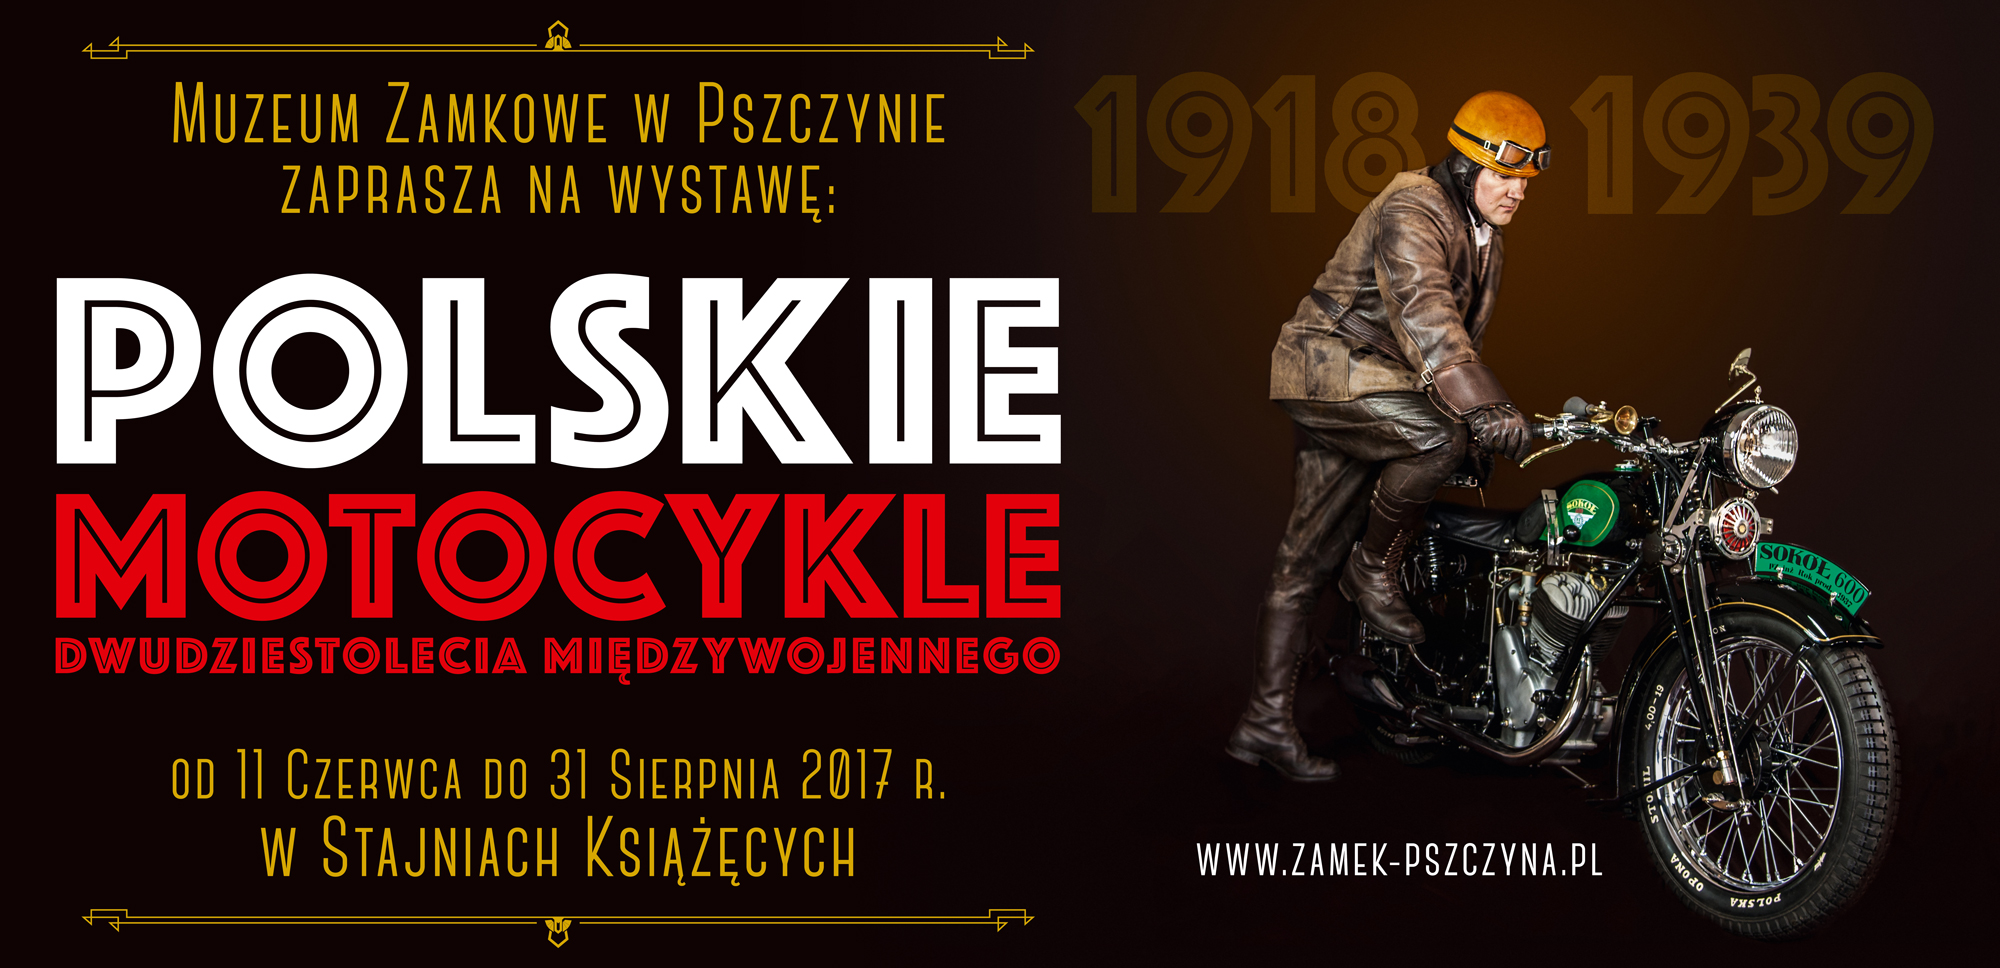 Polskie Motocykle okresu Międzywojennego